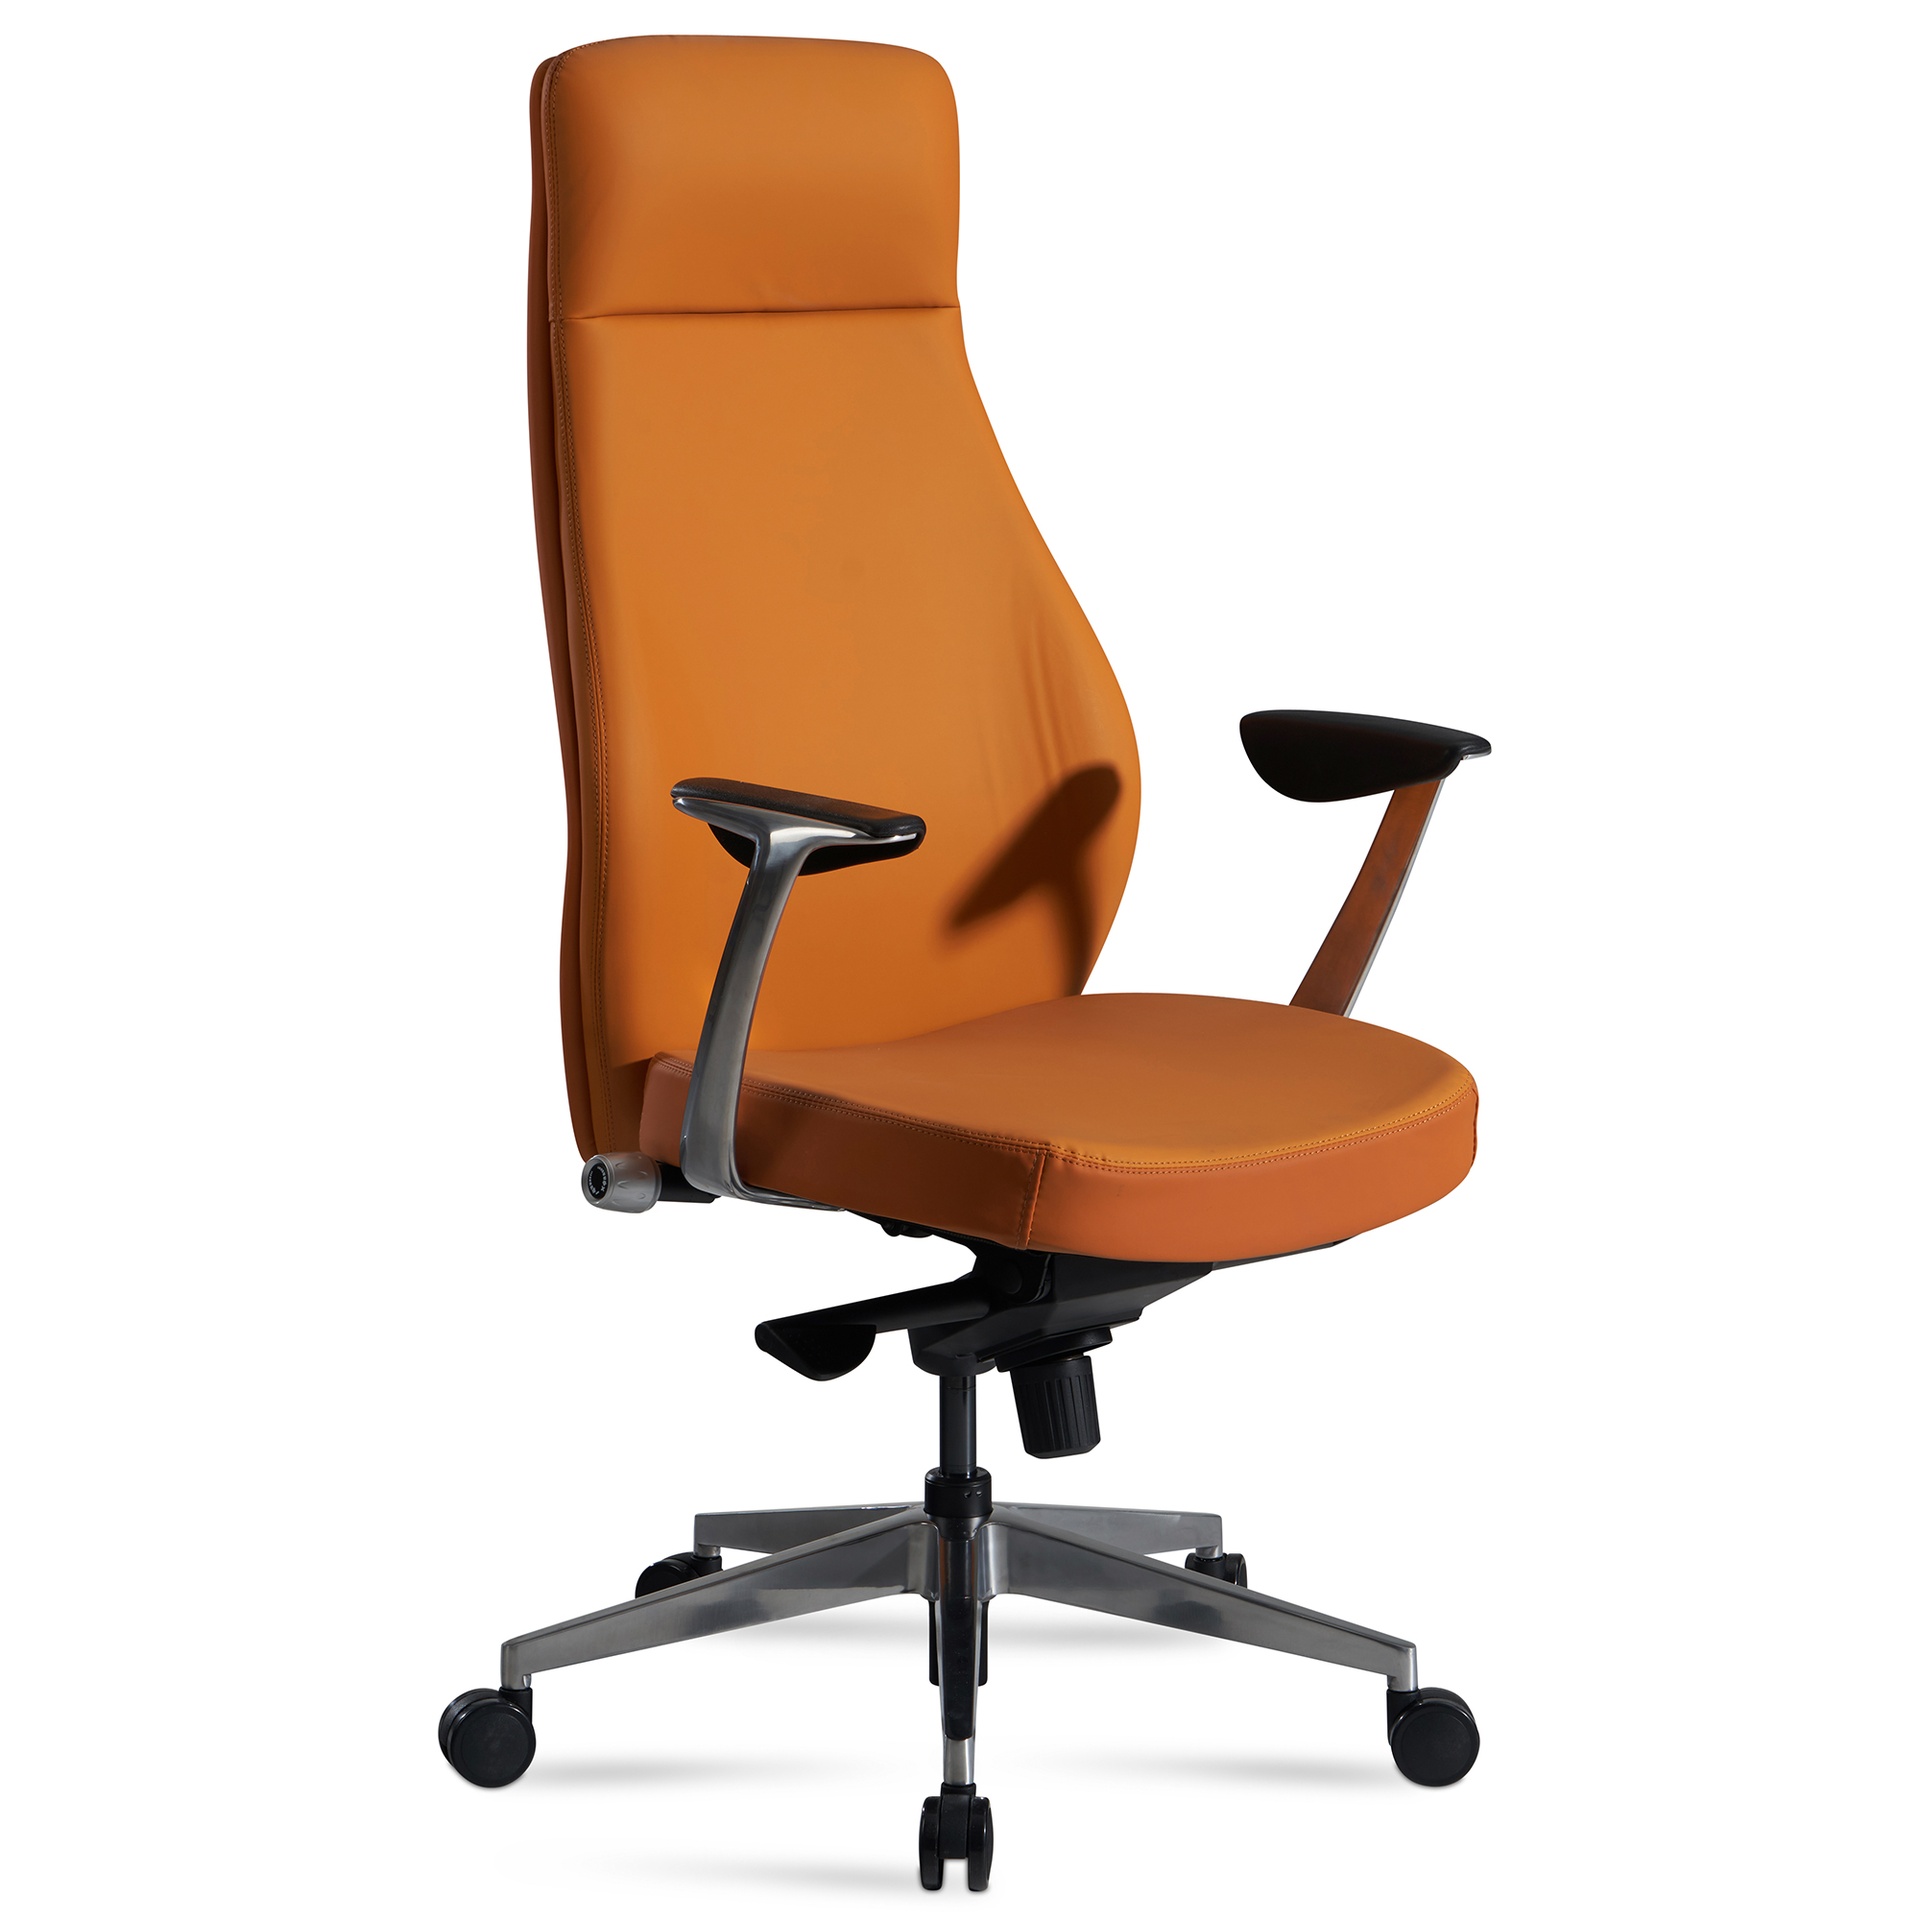 [A09507] Chaise de bureau avec revêtement en cuir artificiel, caramel, jusqu'à 120 kg, fauteuil de direction, réglable en hauteur, ergonomique avec accoudoirs et dossier haut, fonction bascule